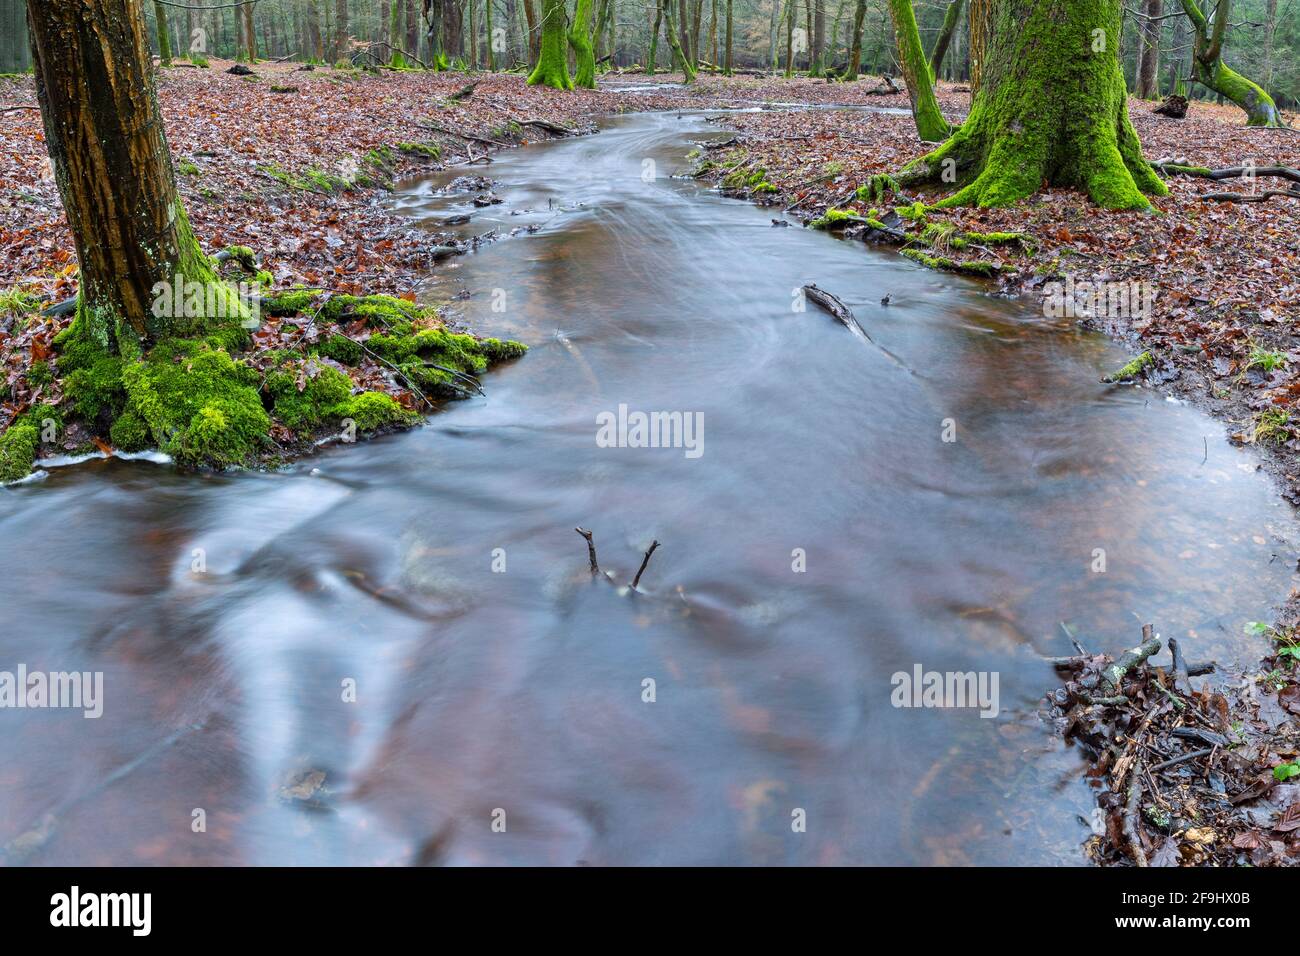 Stream in a deciduous forest. Schierenwald, Steinburg, Schleswig-Holstein, Germany Stock Photo